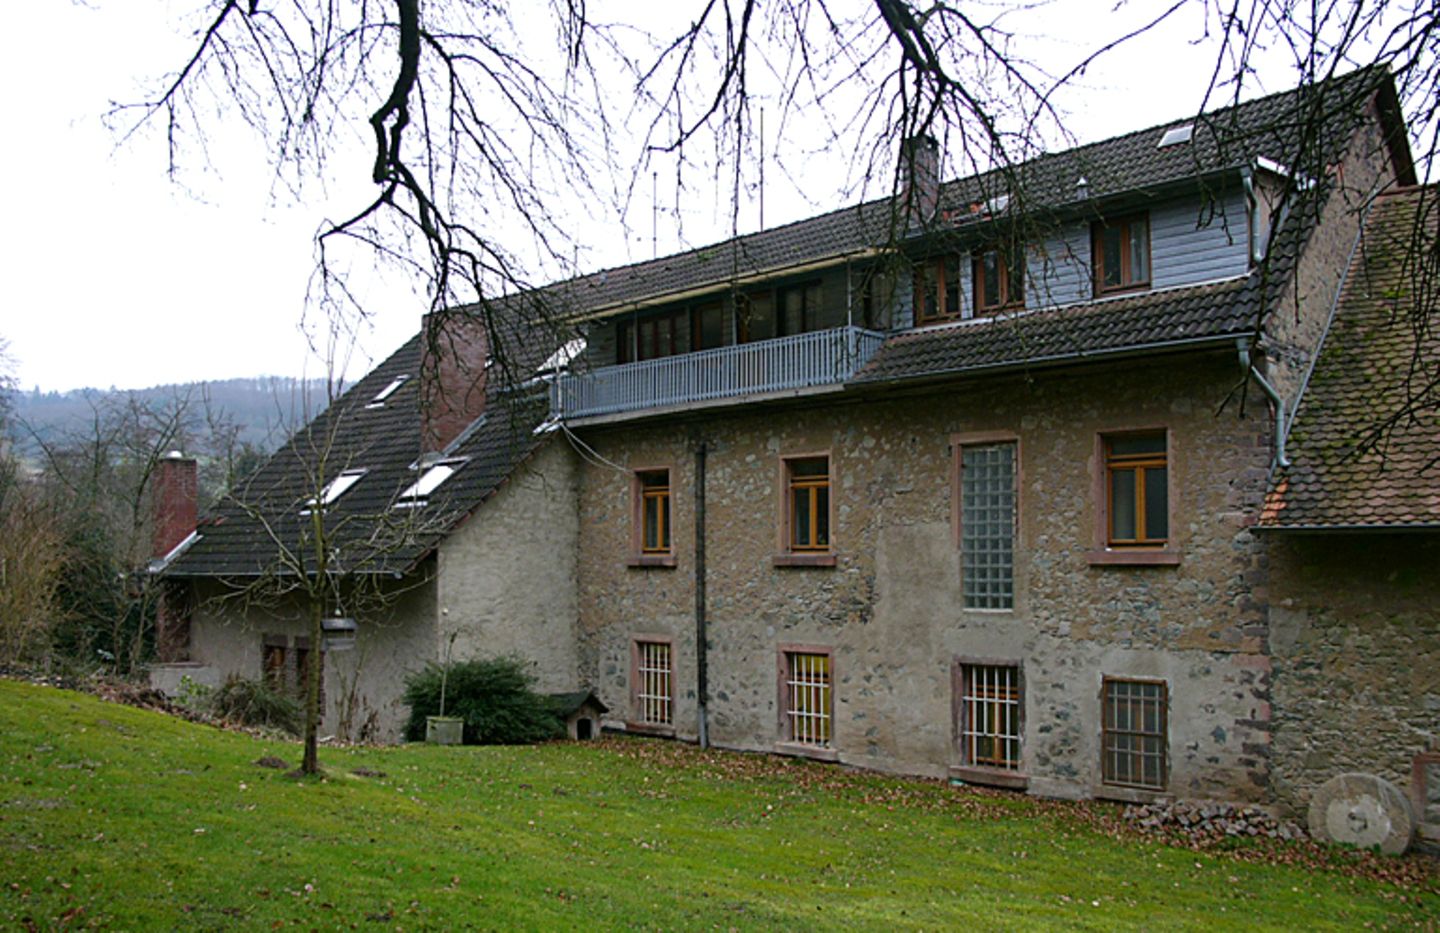 Ehemalige Mühle vor dem Dachausbau